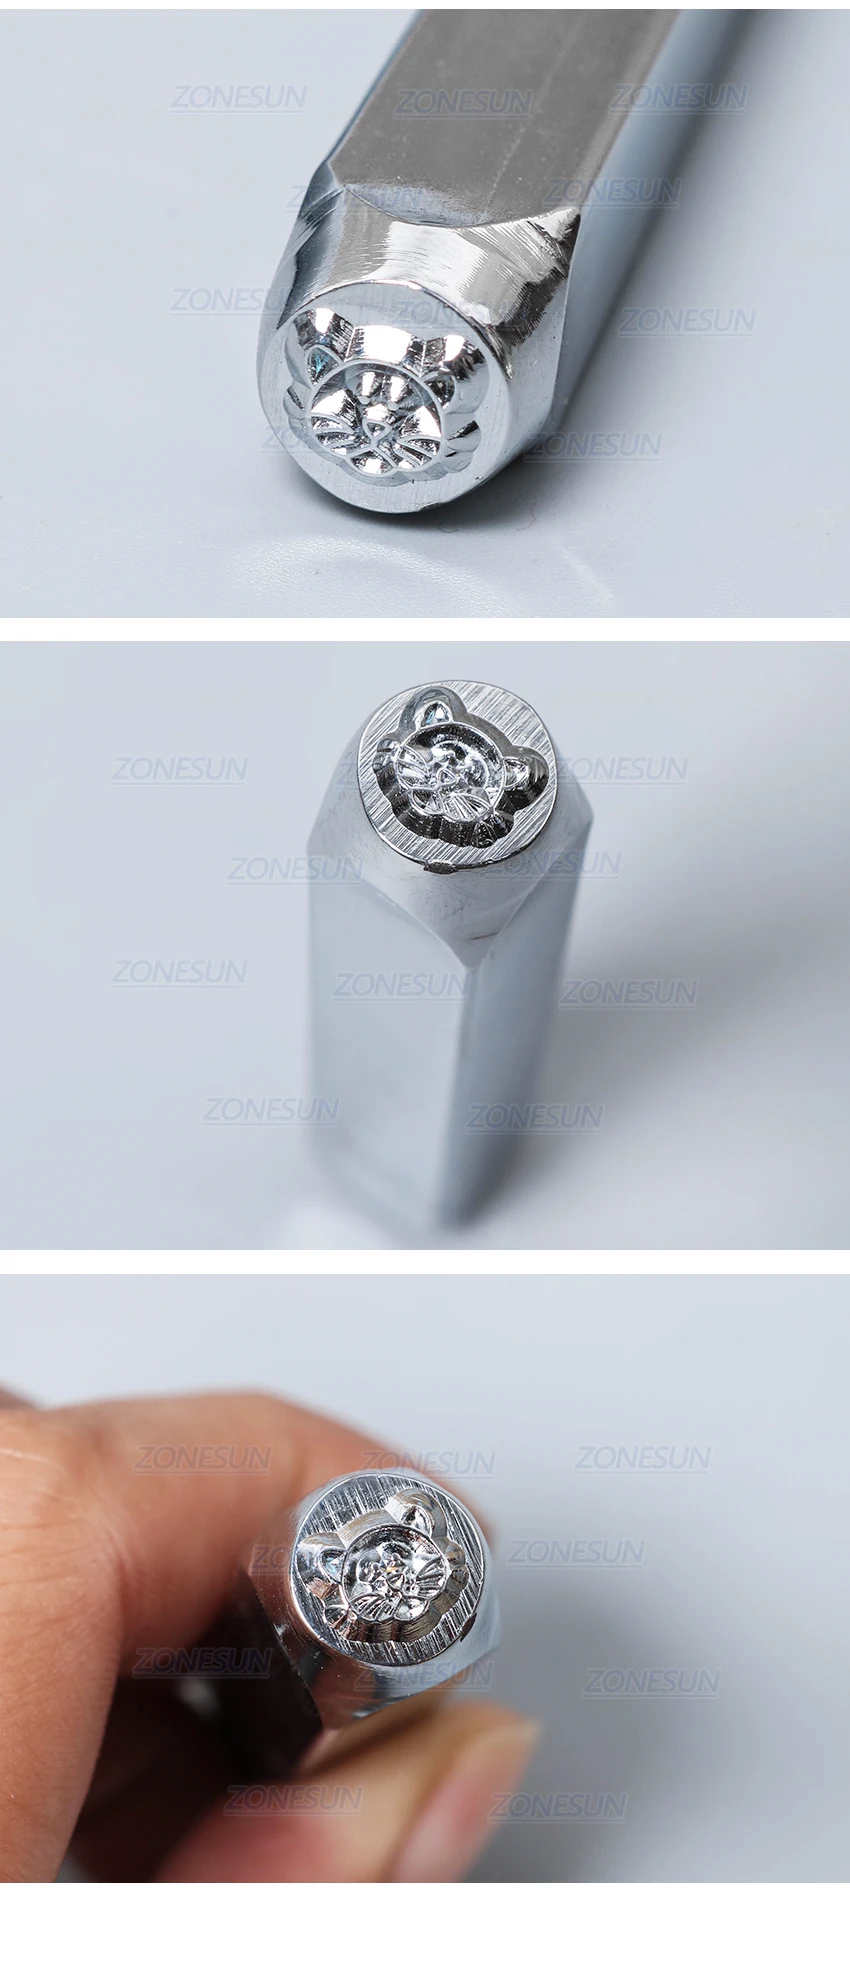 ZONESUN Cat ювелирные изделия штамповка металла алфавит логотип стальные штампы плесень маркировка инструмент штамповки для Золотого кольца браслет ожерелье